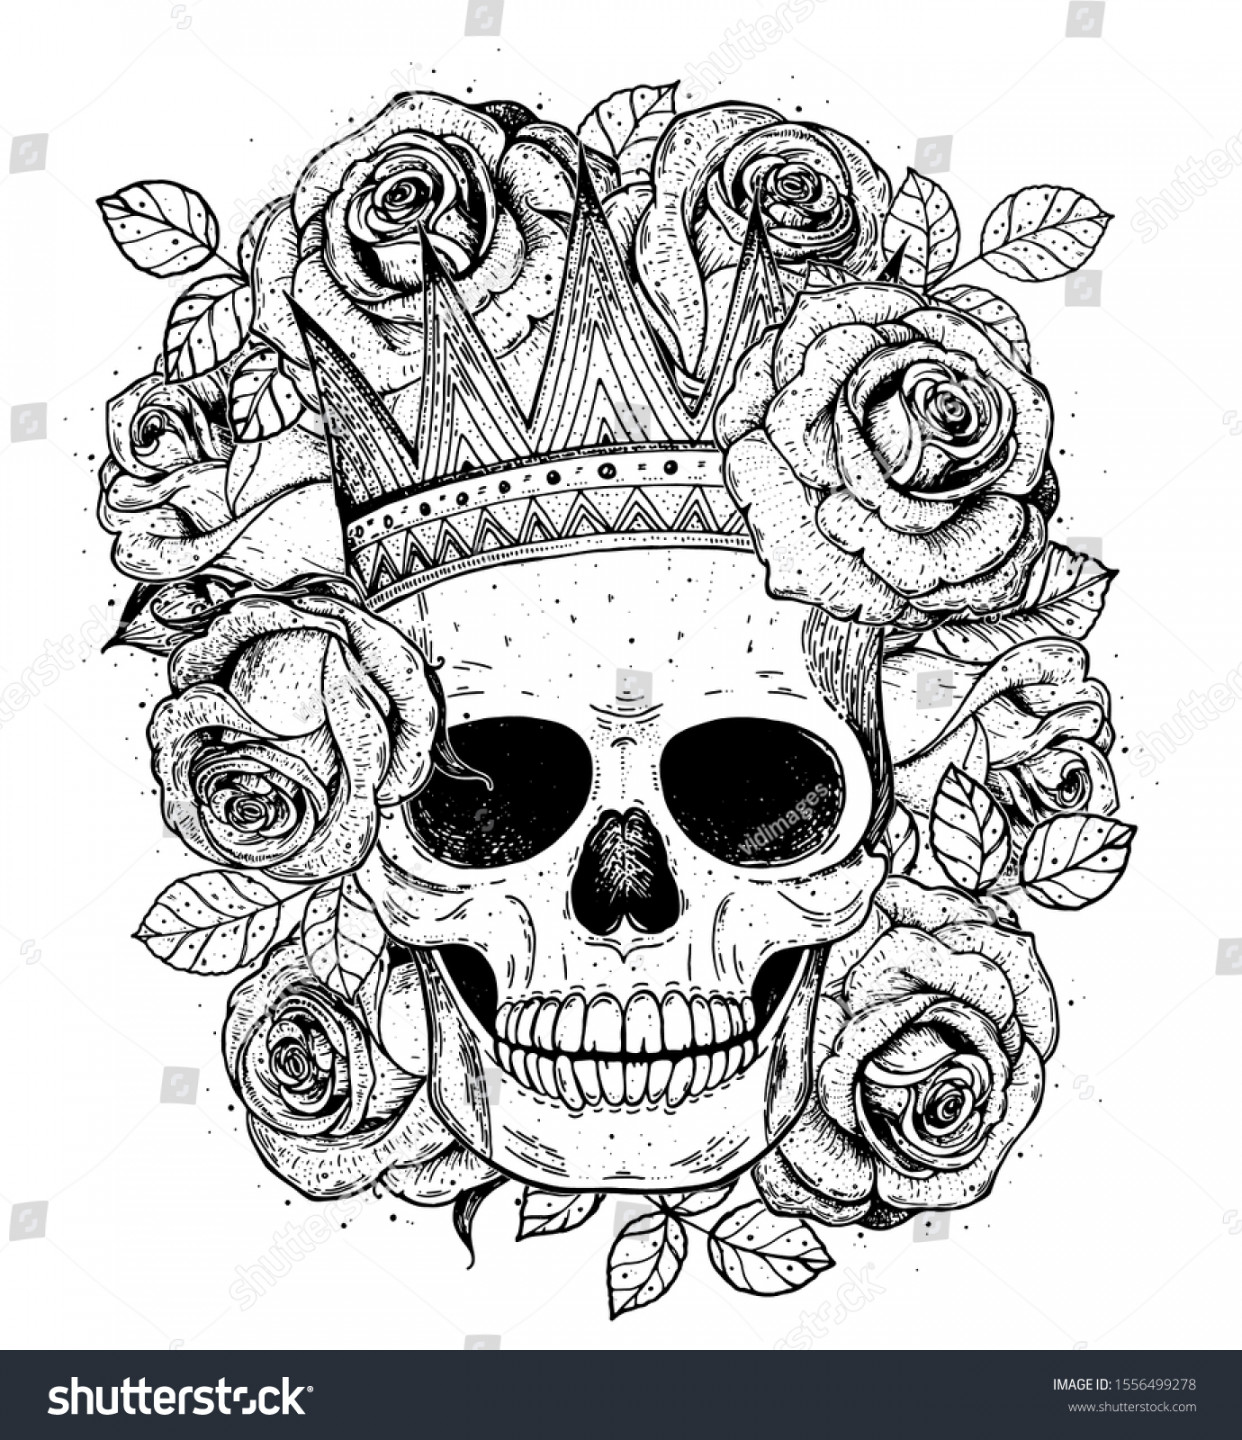 Skull Queen Hand Drawn Illustration Tattoo: Stock-Vektorgrafik